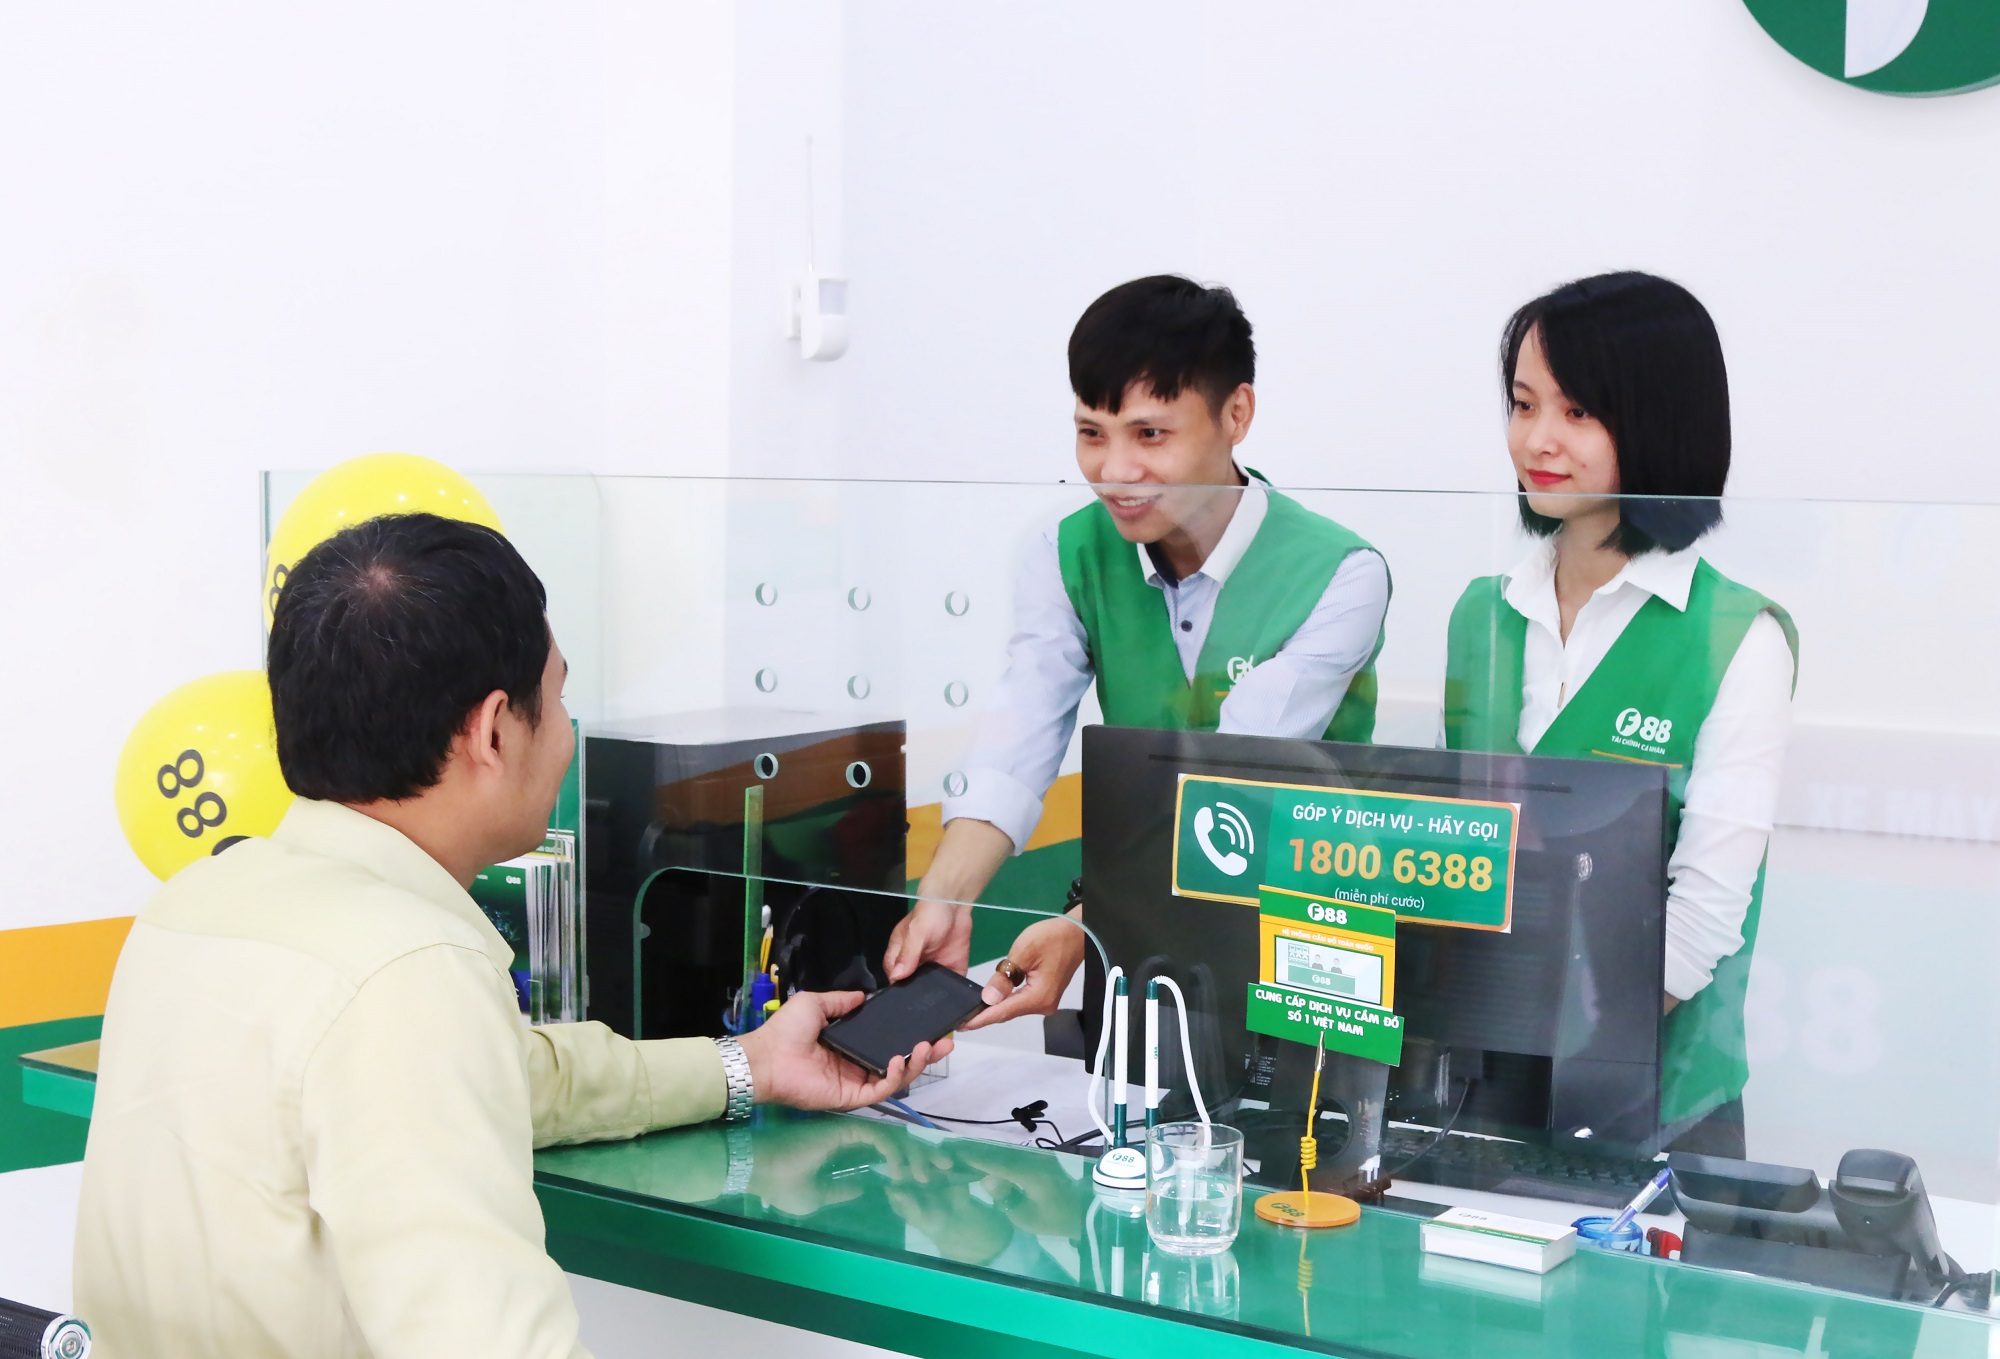 Mekong Capital-backed pawnshop chain F88 to raise $8.7m via bonds